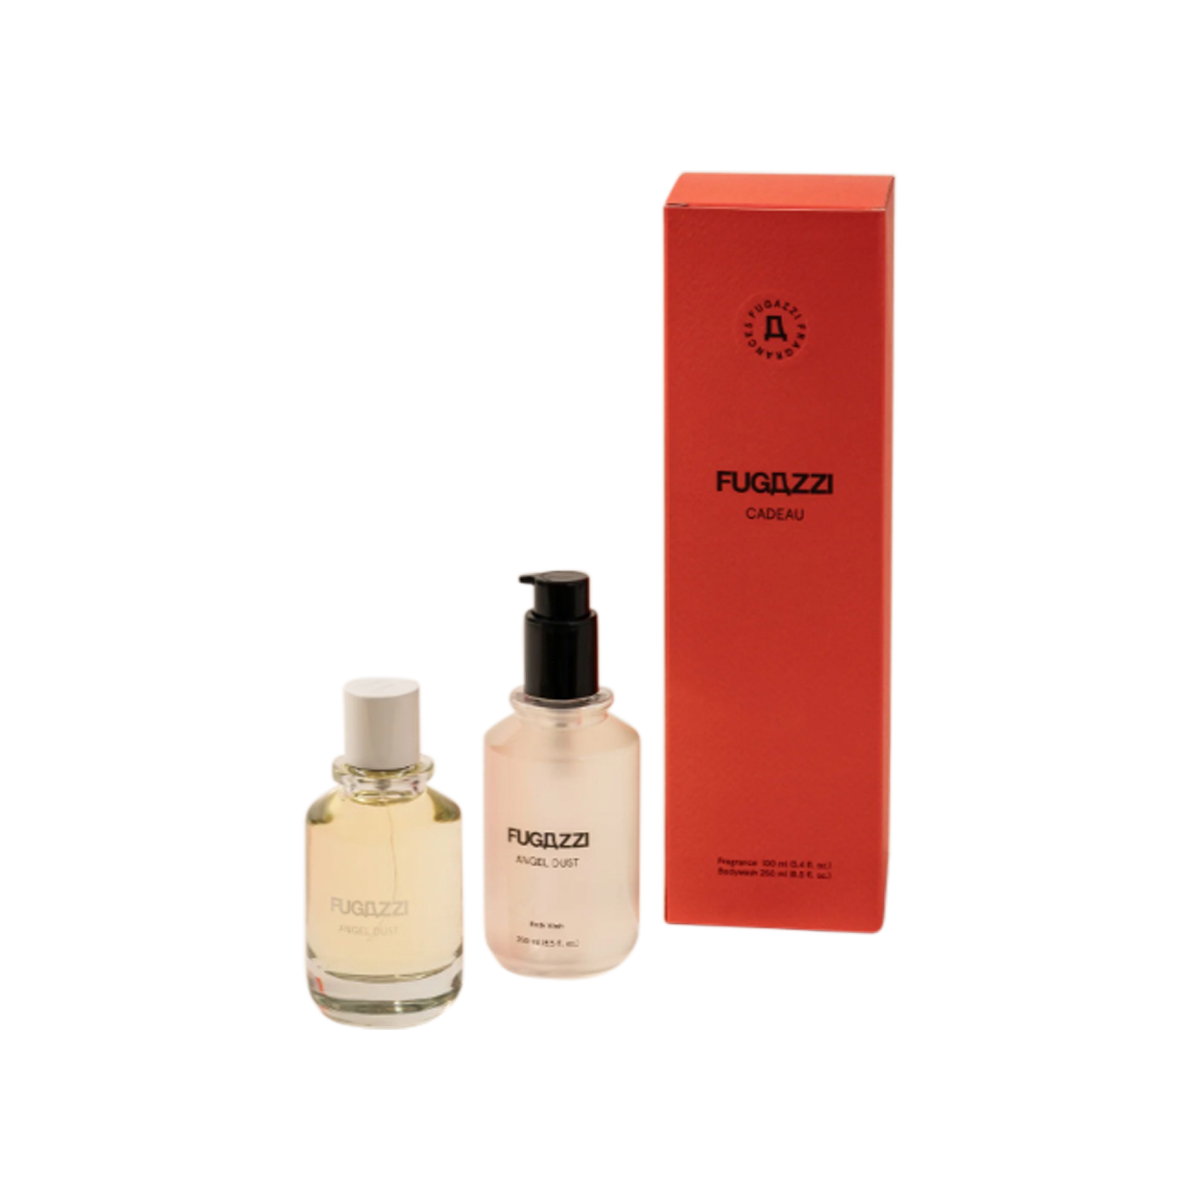 Fugazzi - Angel Dust Eau de Parfum and Body Wash